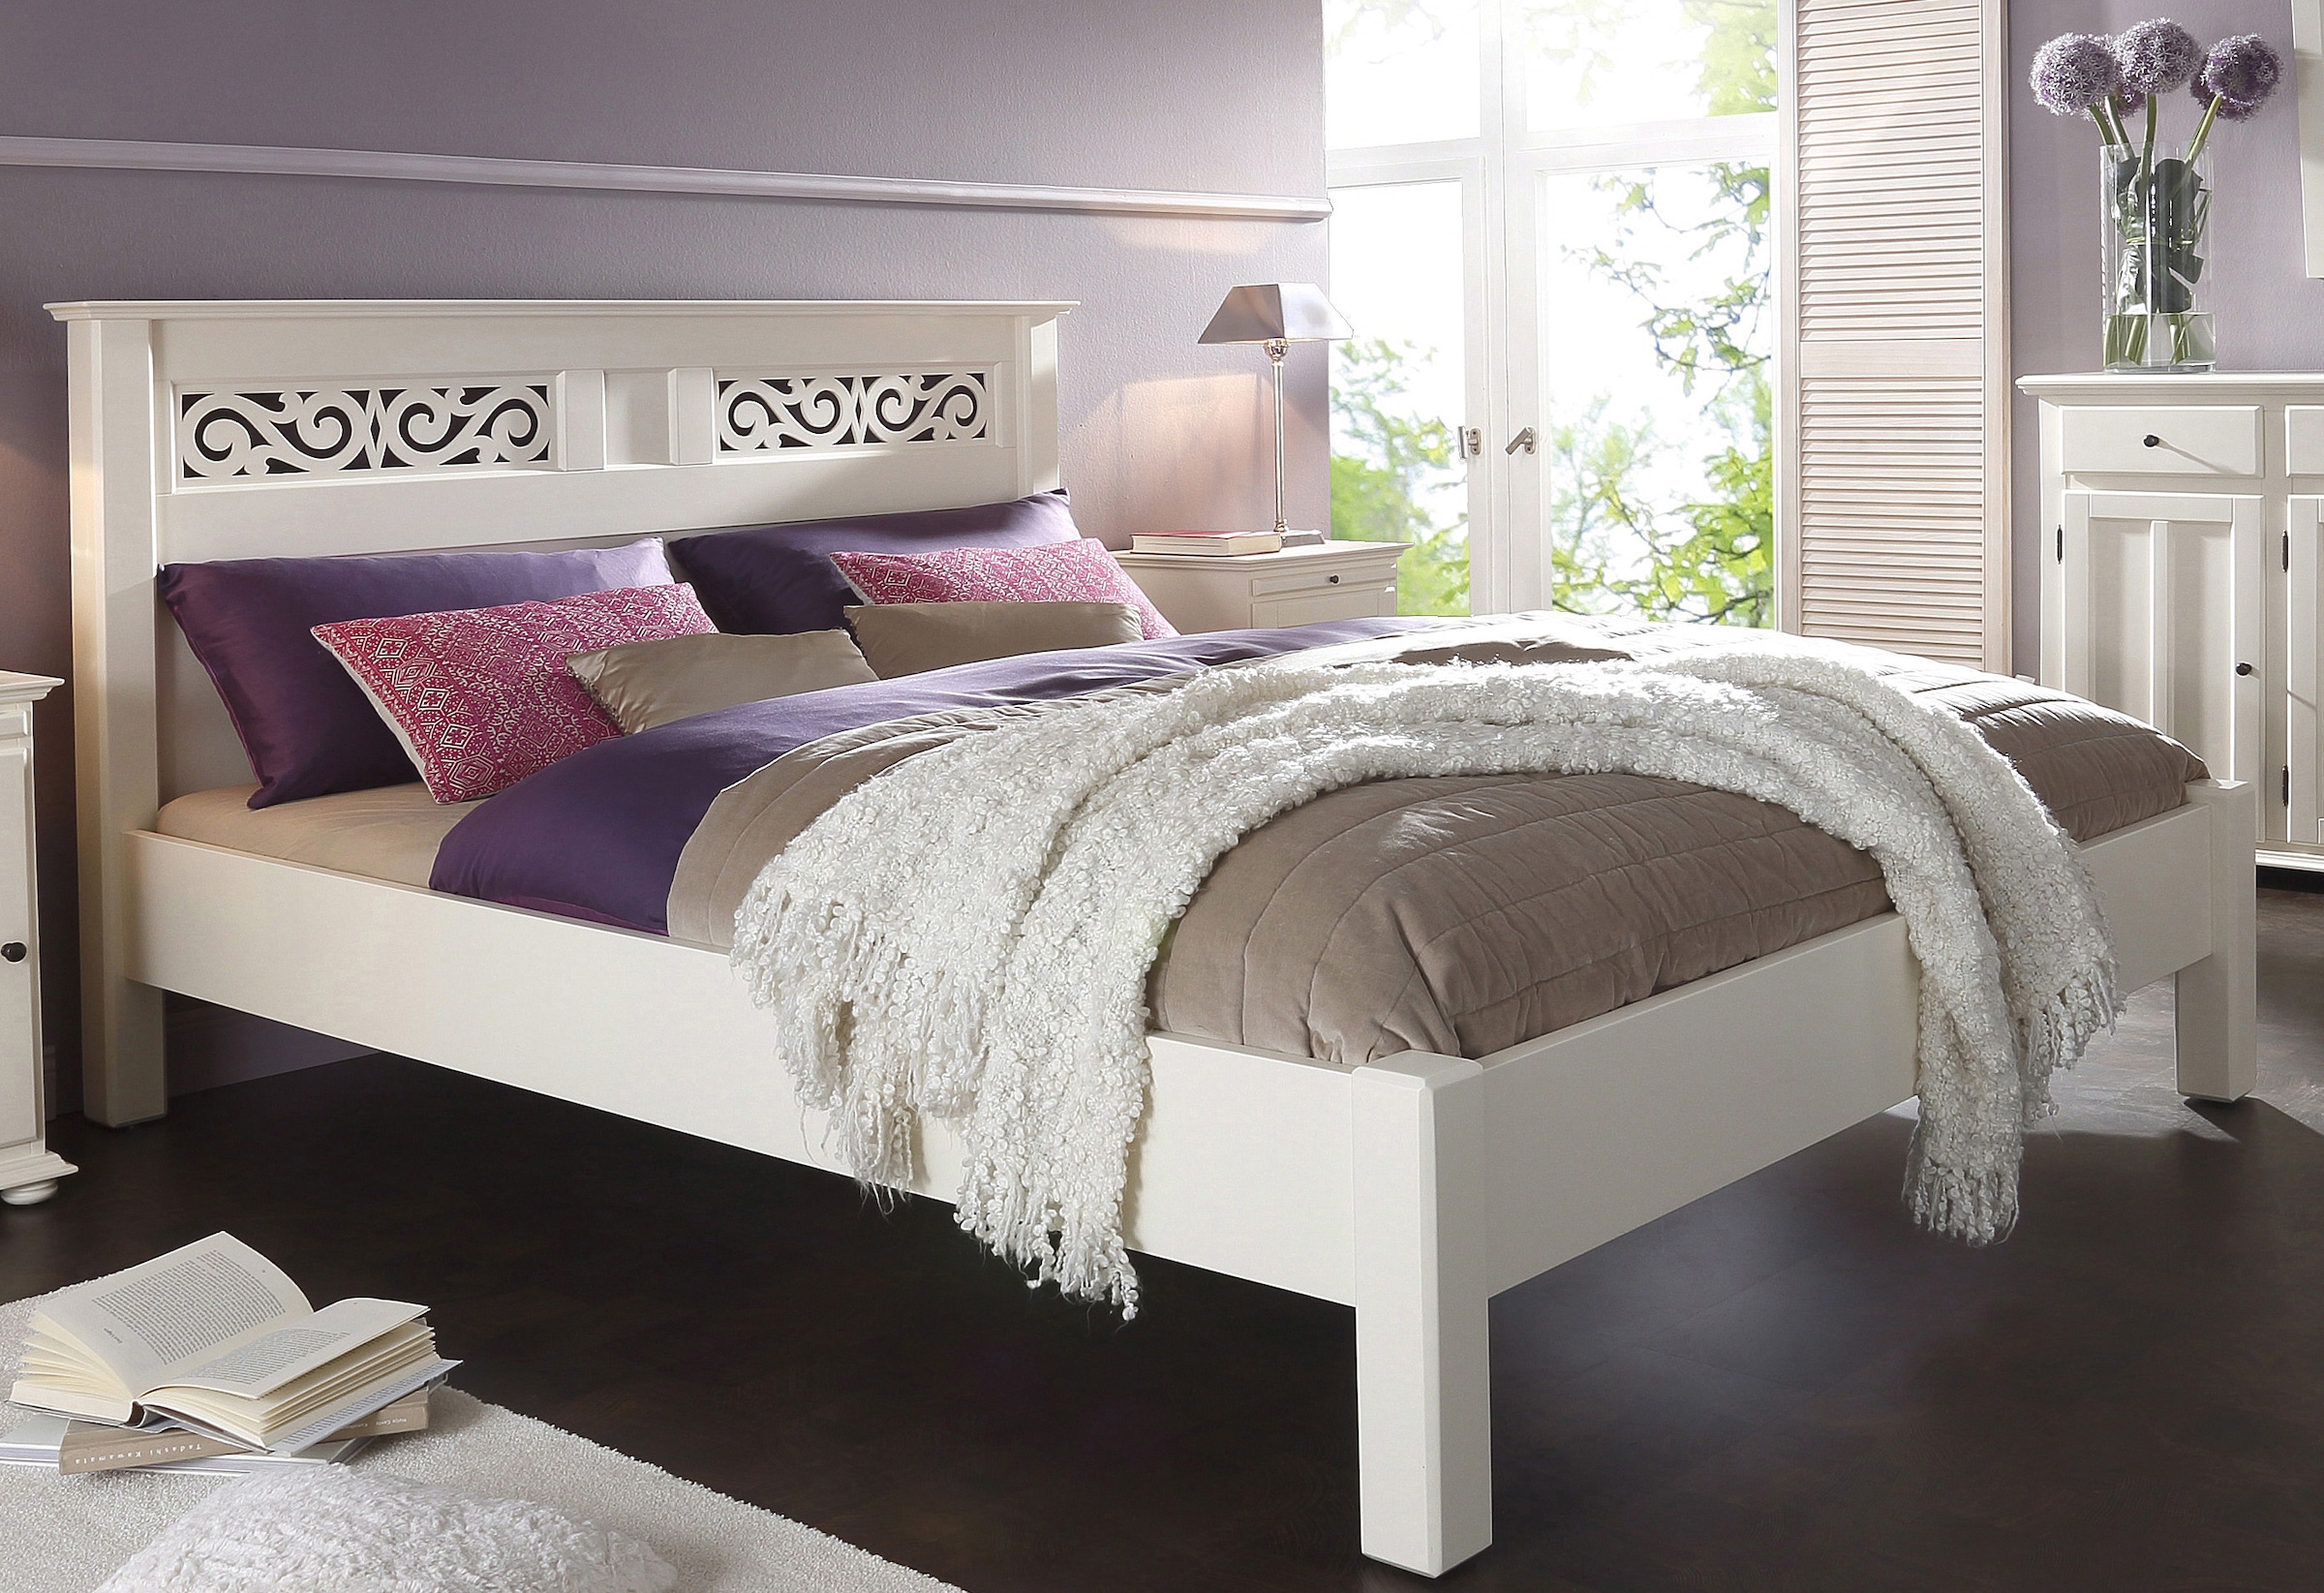 Home affaire Bett »Arabeske«, aus schönem massivem Buchenholz, mit dekorativen Fräsungen am Kopfteil